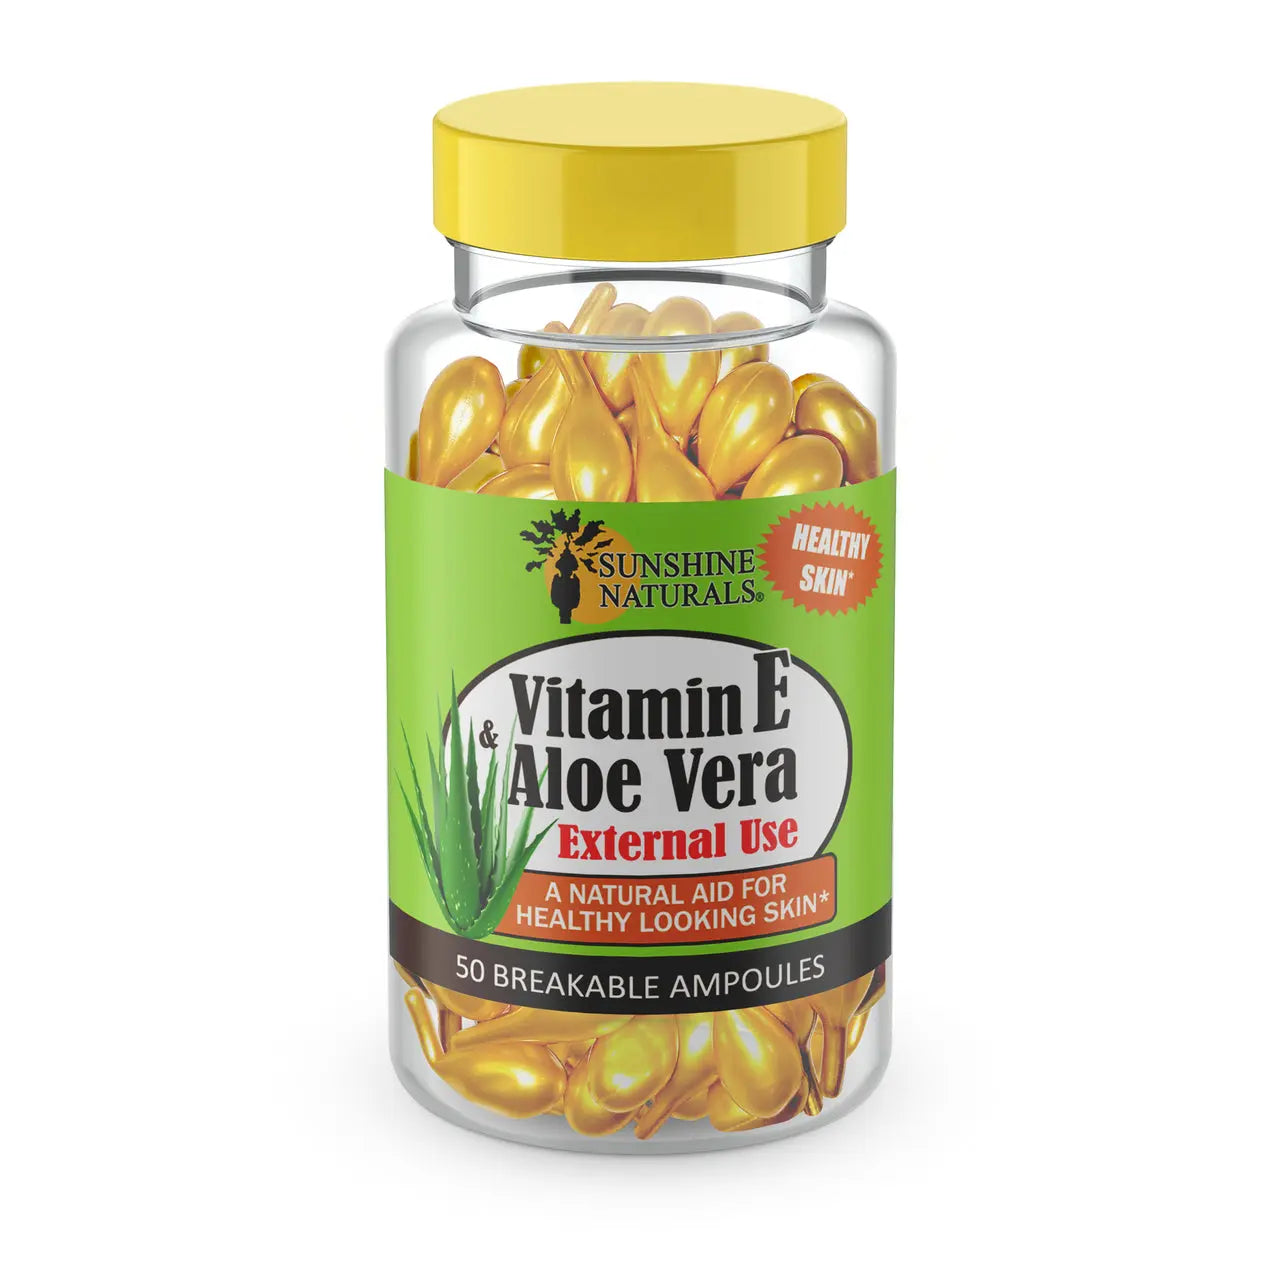 Vitamin E & Aloe Vera 50 breakable ampoules Sunshinenaturals